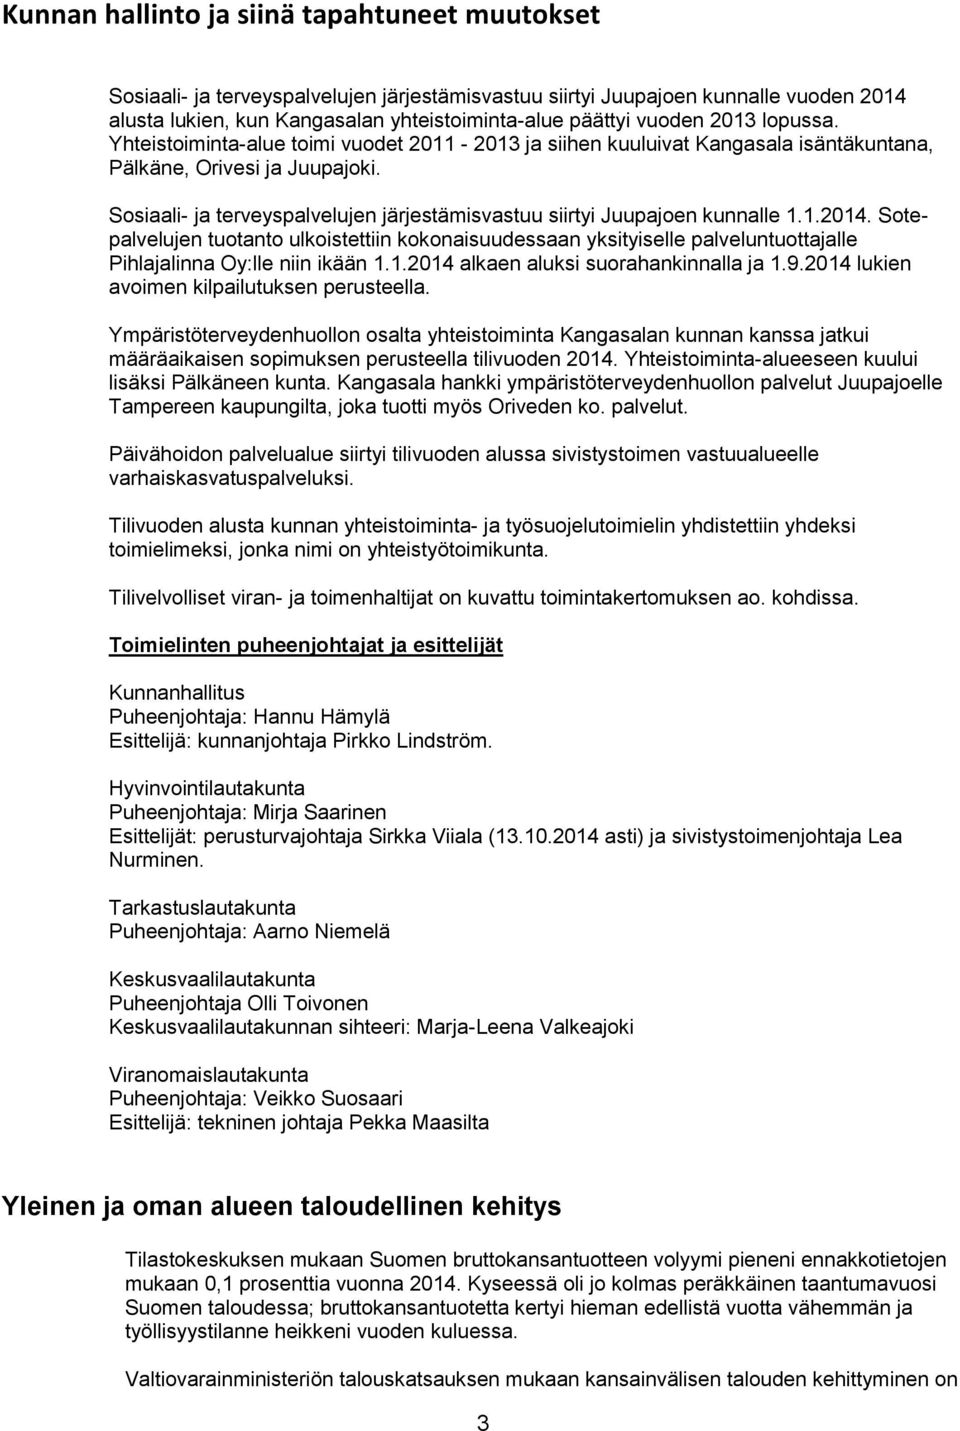 Sosiaali- ja terveyspalvelujen järjestämisvastuu siirtyi Juupajoen kunnalle 1.1.2014.